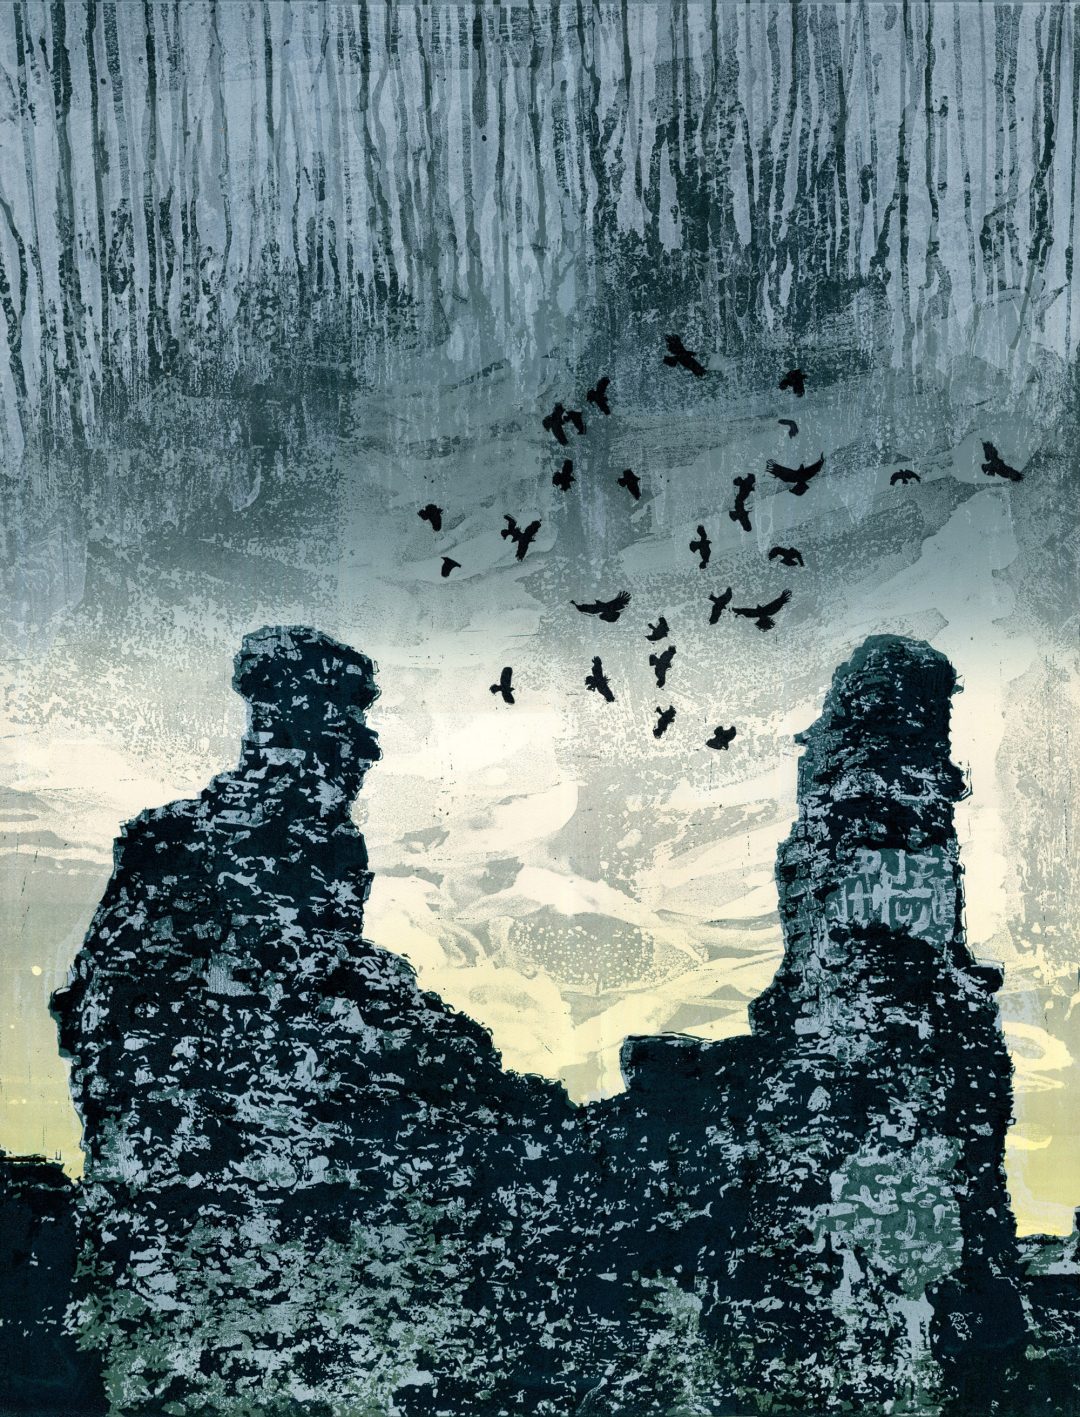 'Diálogo' (Segunda impresión de la abadía basada en las ruinas de Sawley) Steve Edwards Lino grabado y cortado, 90 x 71 cm, edición variable de 25